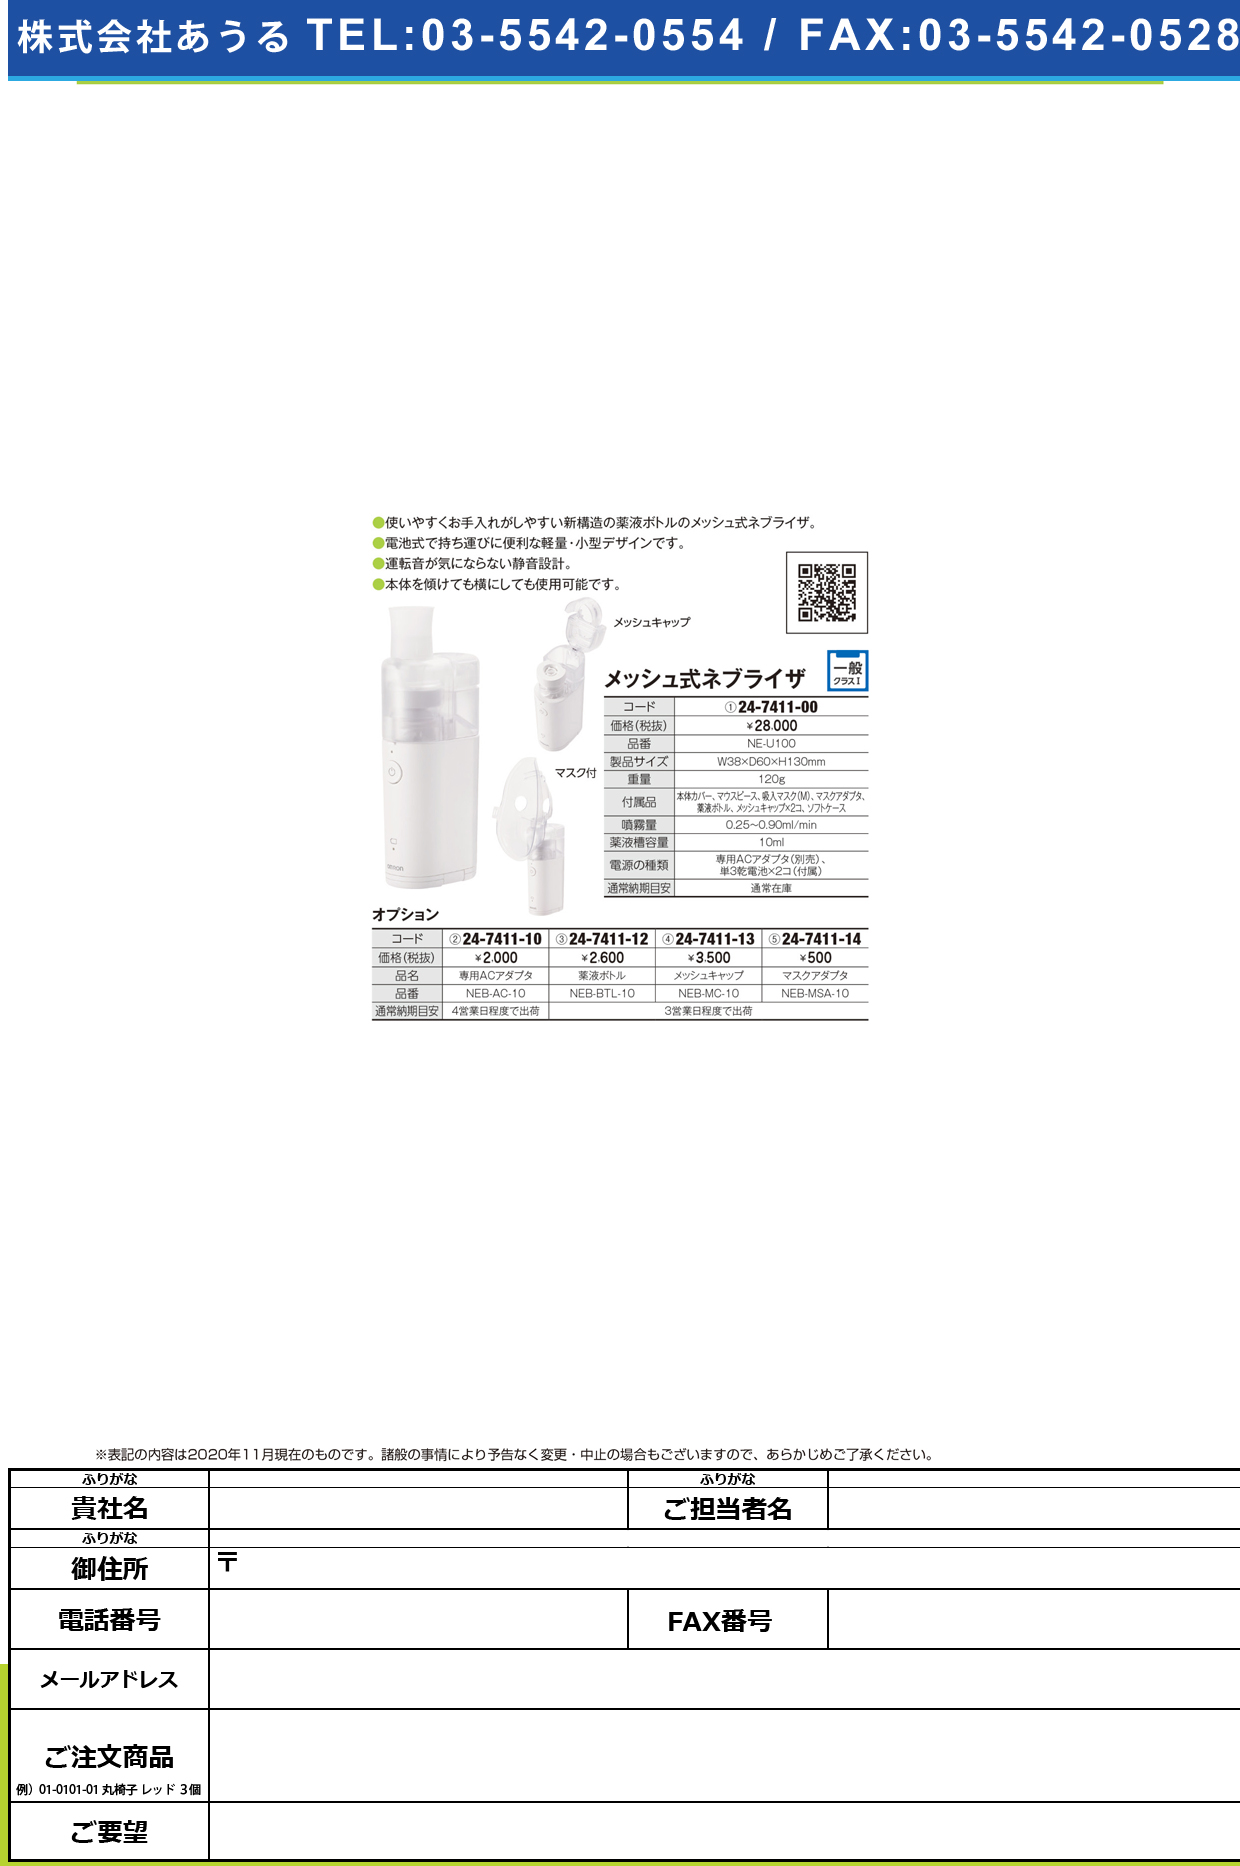 ネブライザ用マスクアダプタ NEB-MSA-10NEB-MSA-10(24-7411-14)【フクダコーリン】(販売単位:1)